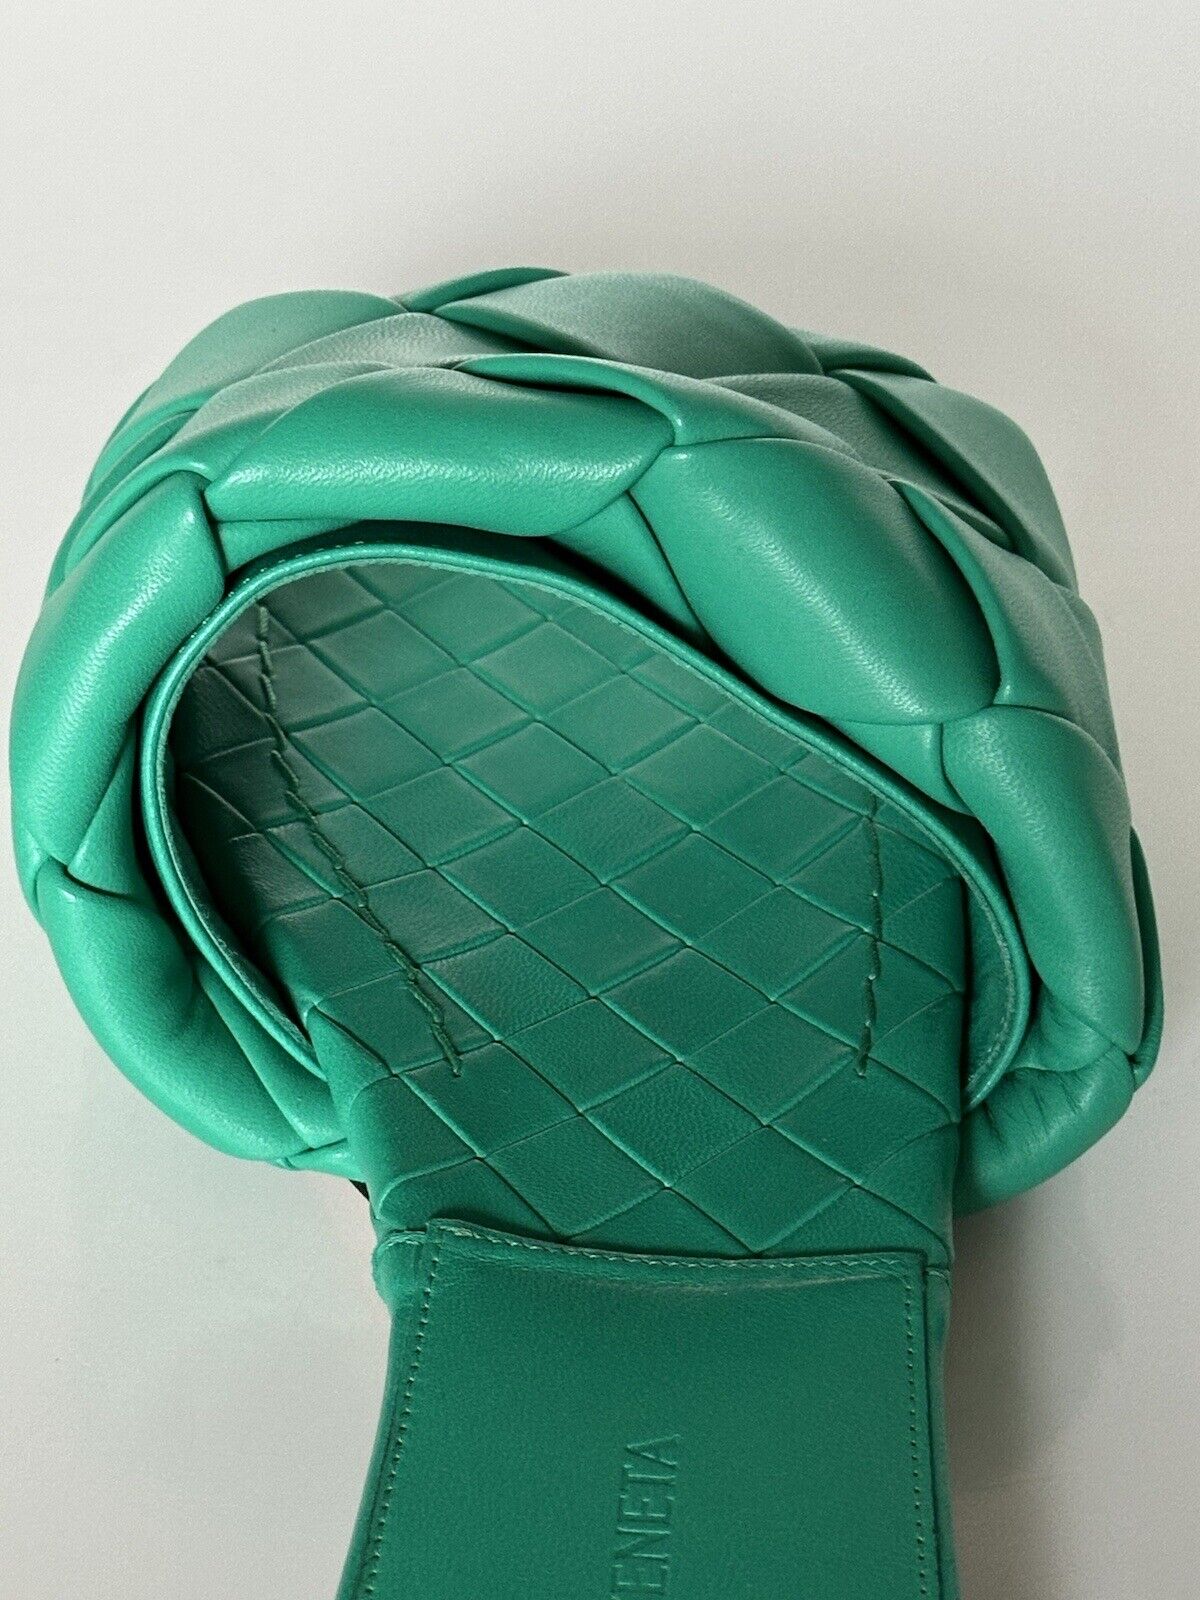 NWT 1350 долларов США Bottega Veneta Green Loden Сандалии на плоской подошве Обувь 7,5 США (37,5 ЕС) 608853 